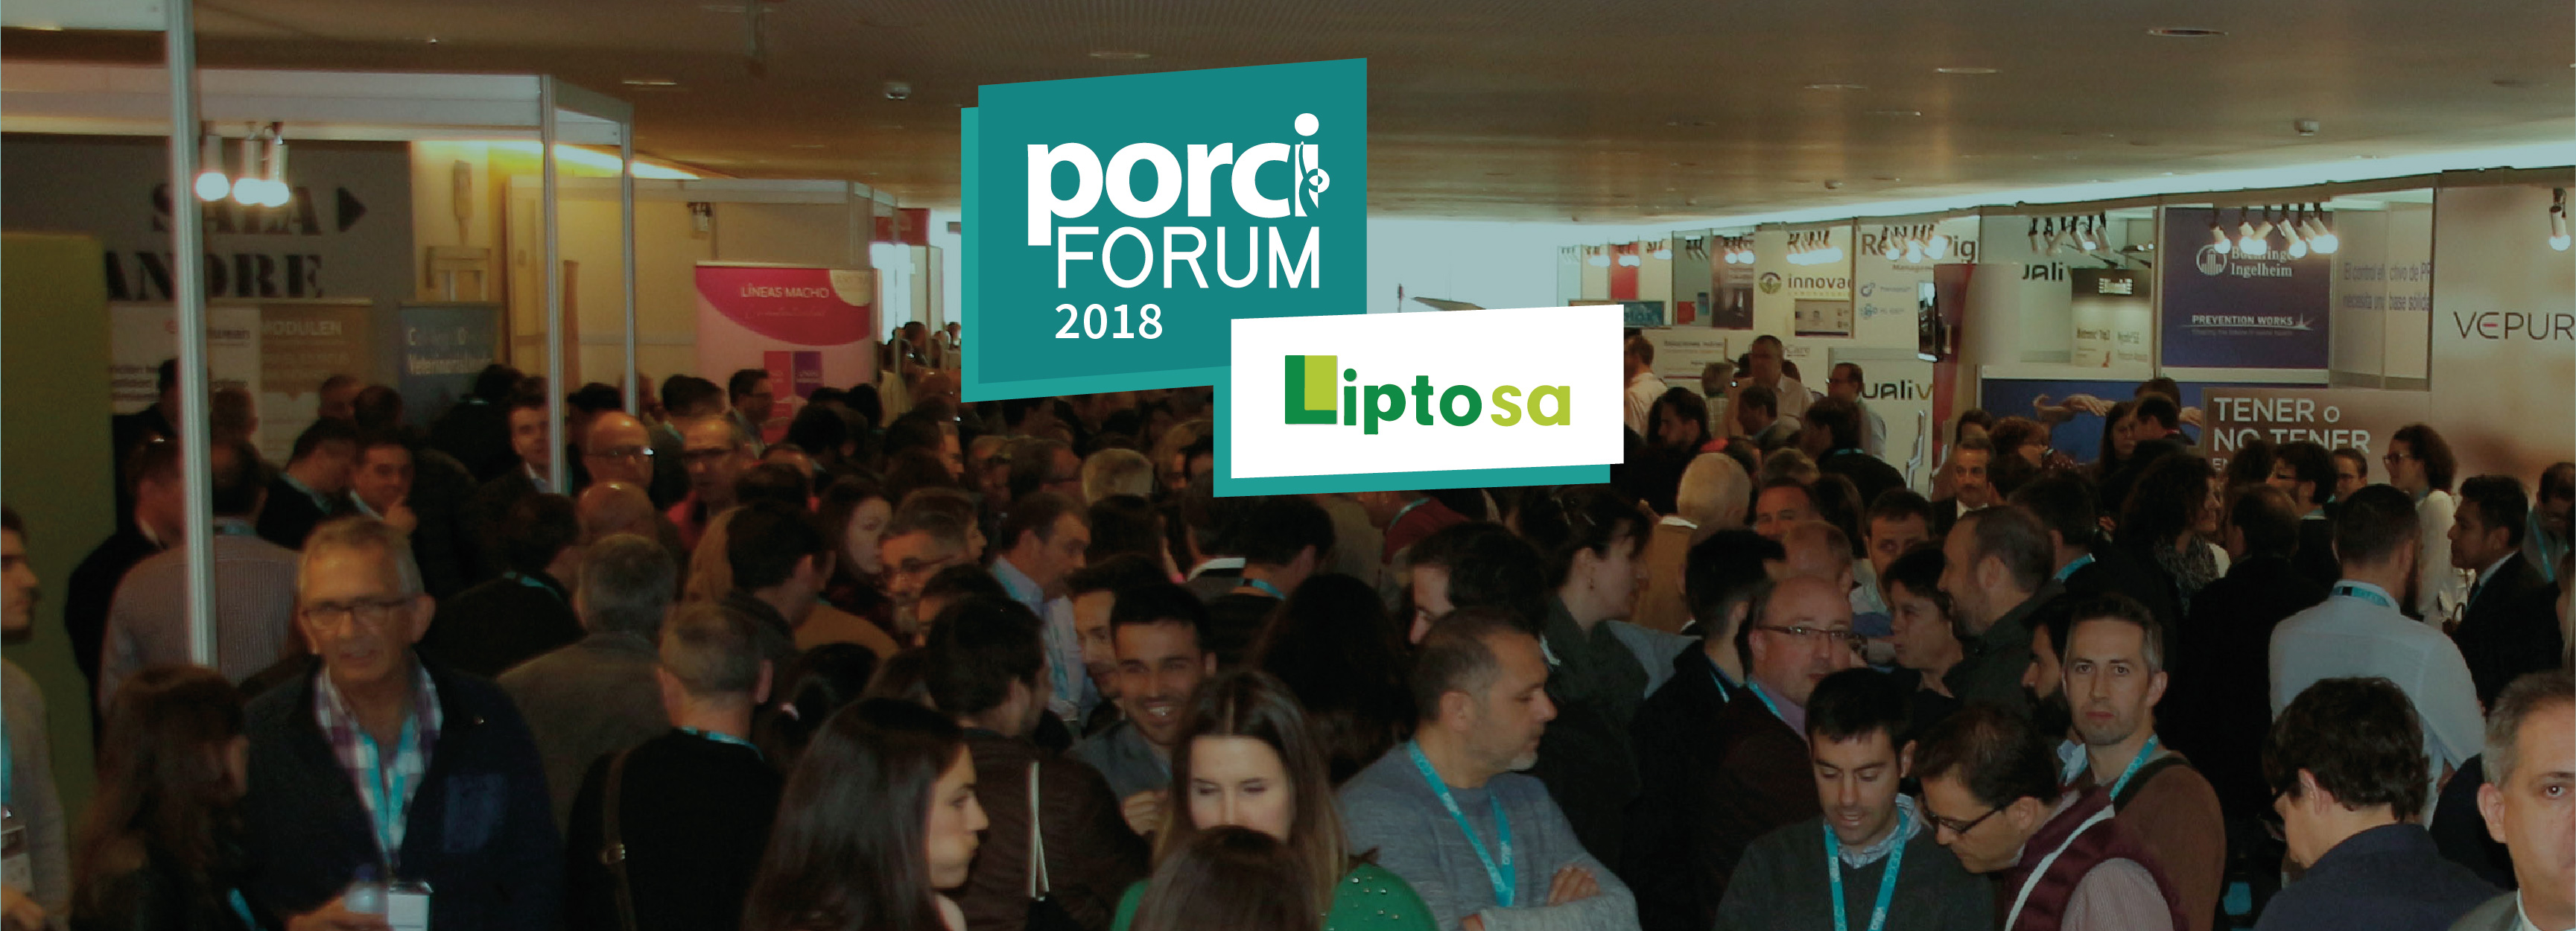 Lípidos Toledo SA presente en el patrocinio del porciFORUM 2018 en Lleida